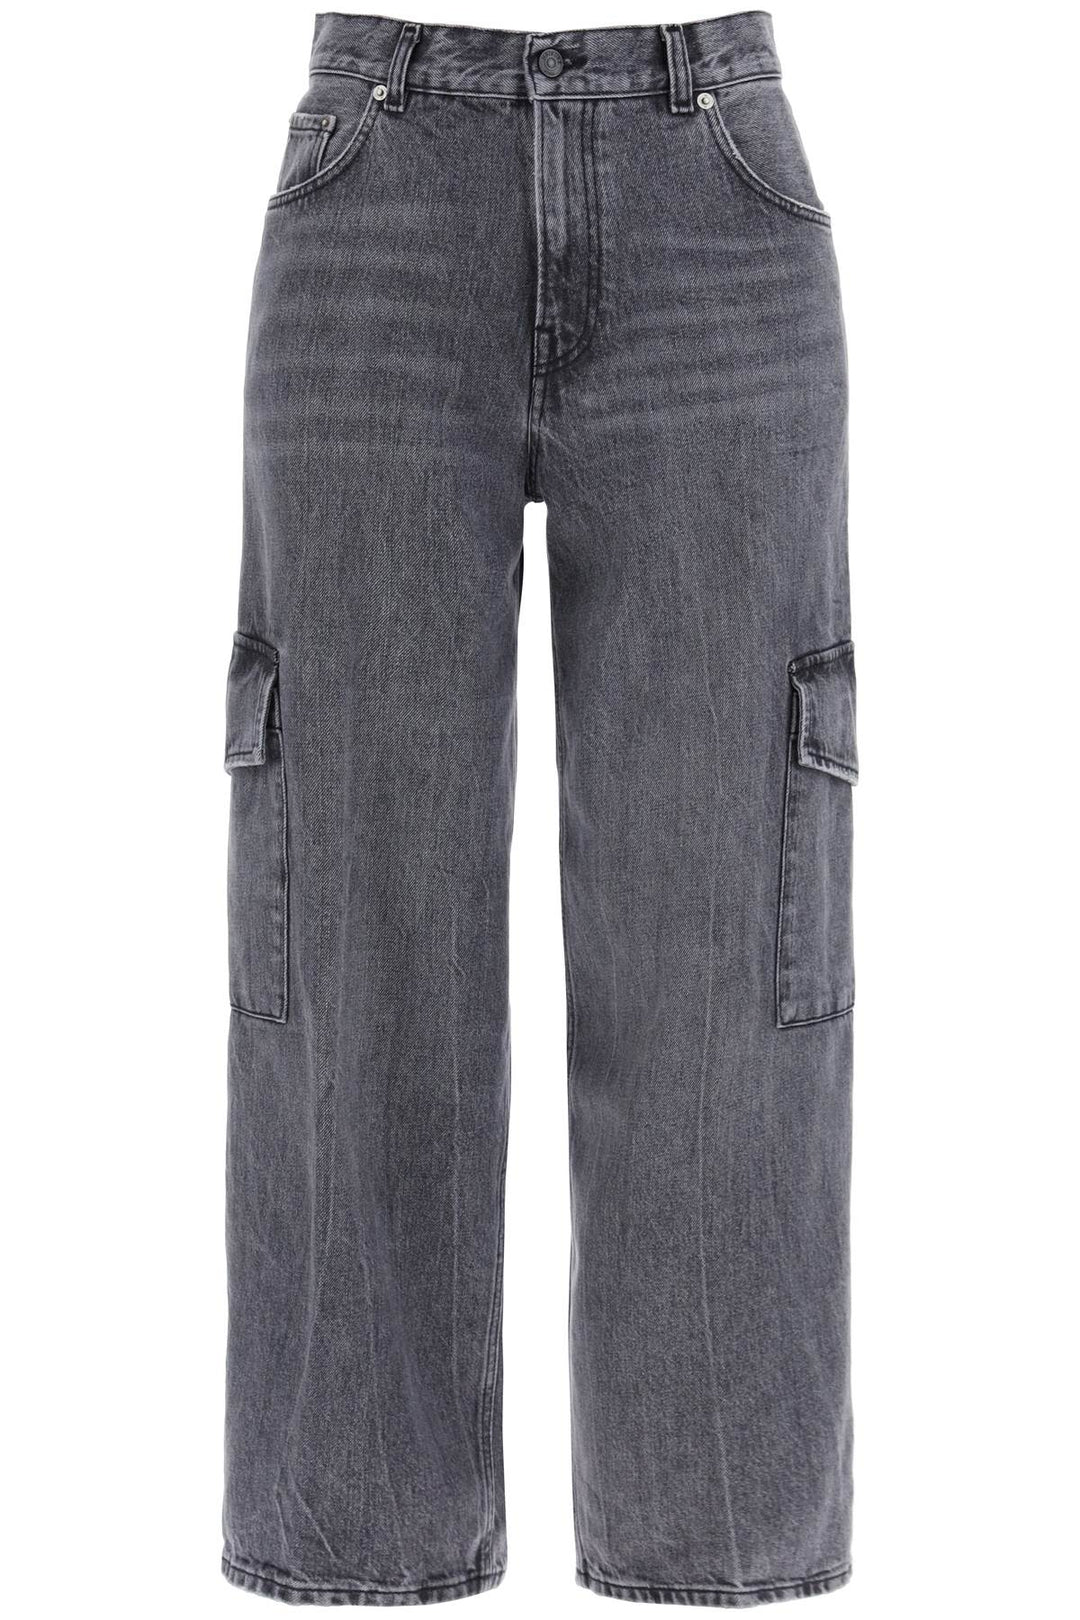 bethany cargo jeans-0